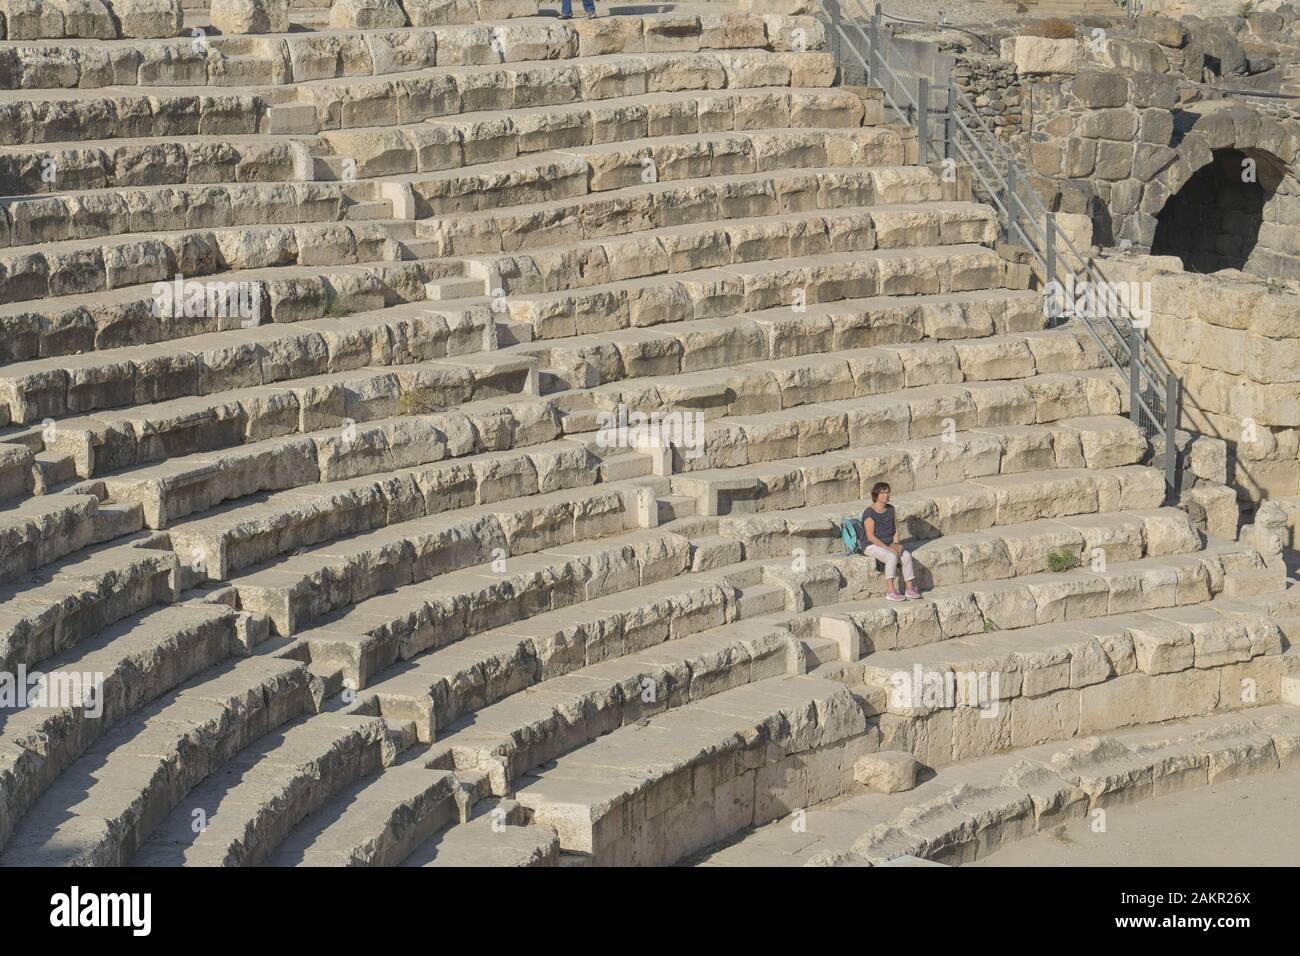 Amphitheater, Ausgrabungsstätte Bet Sche´an, Israel Stock Photo